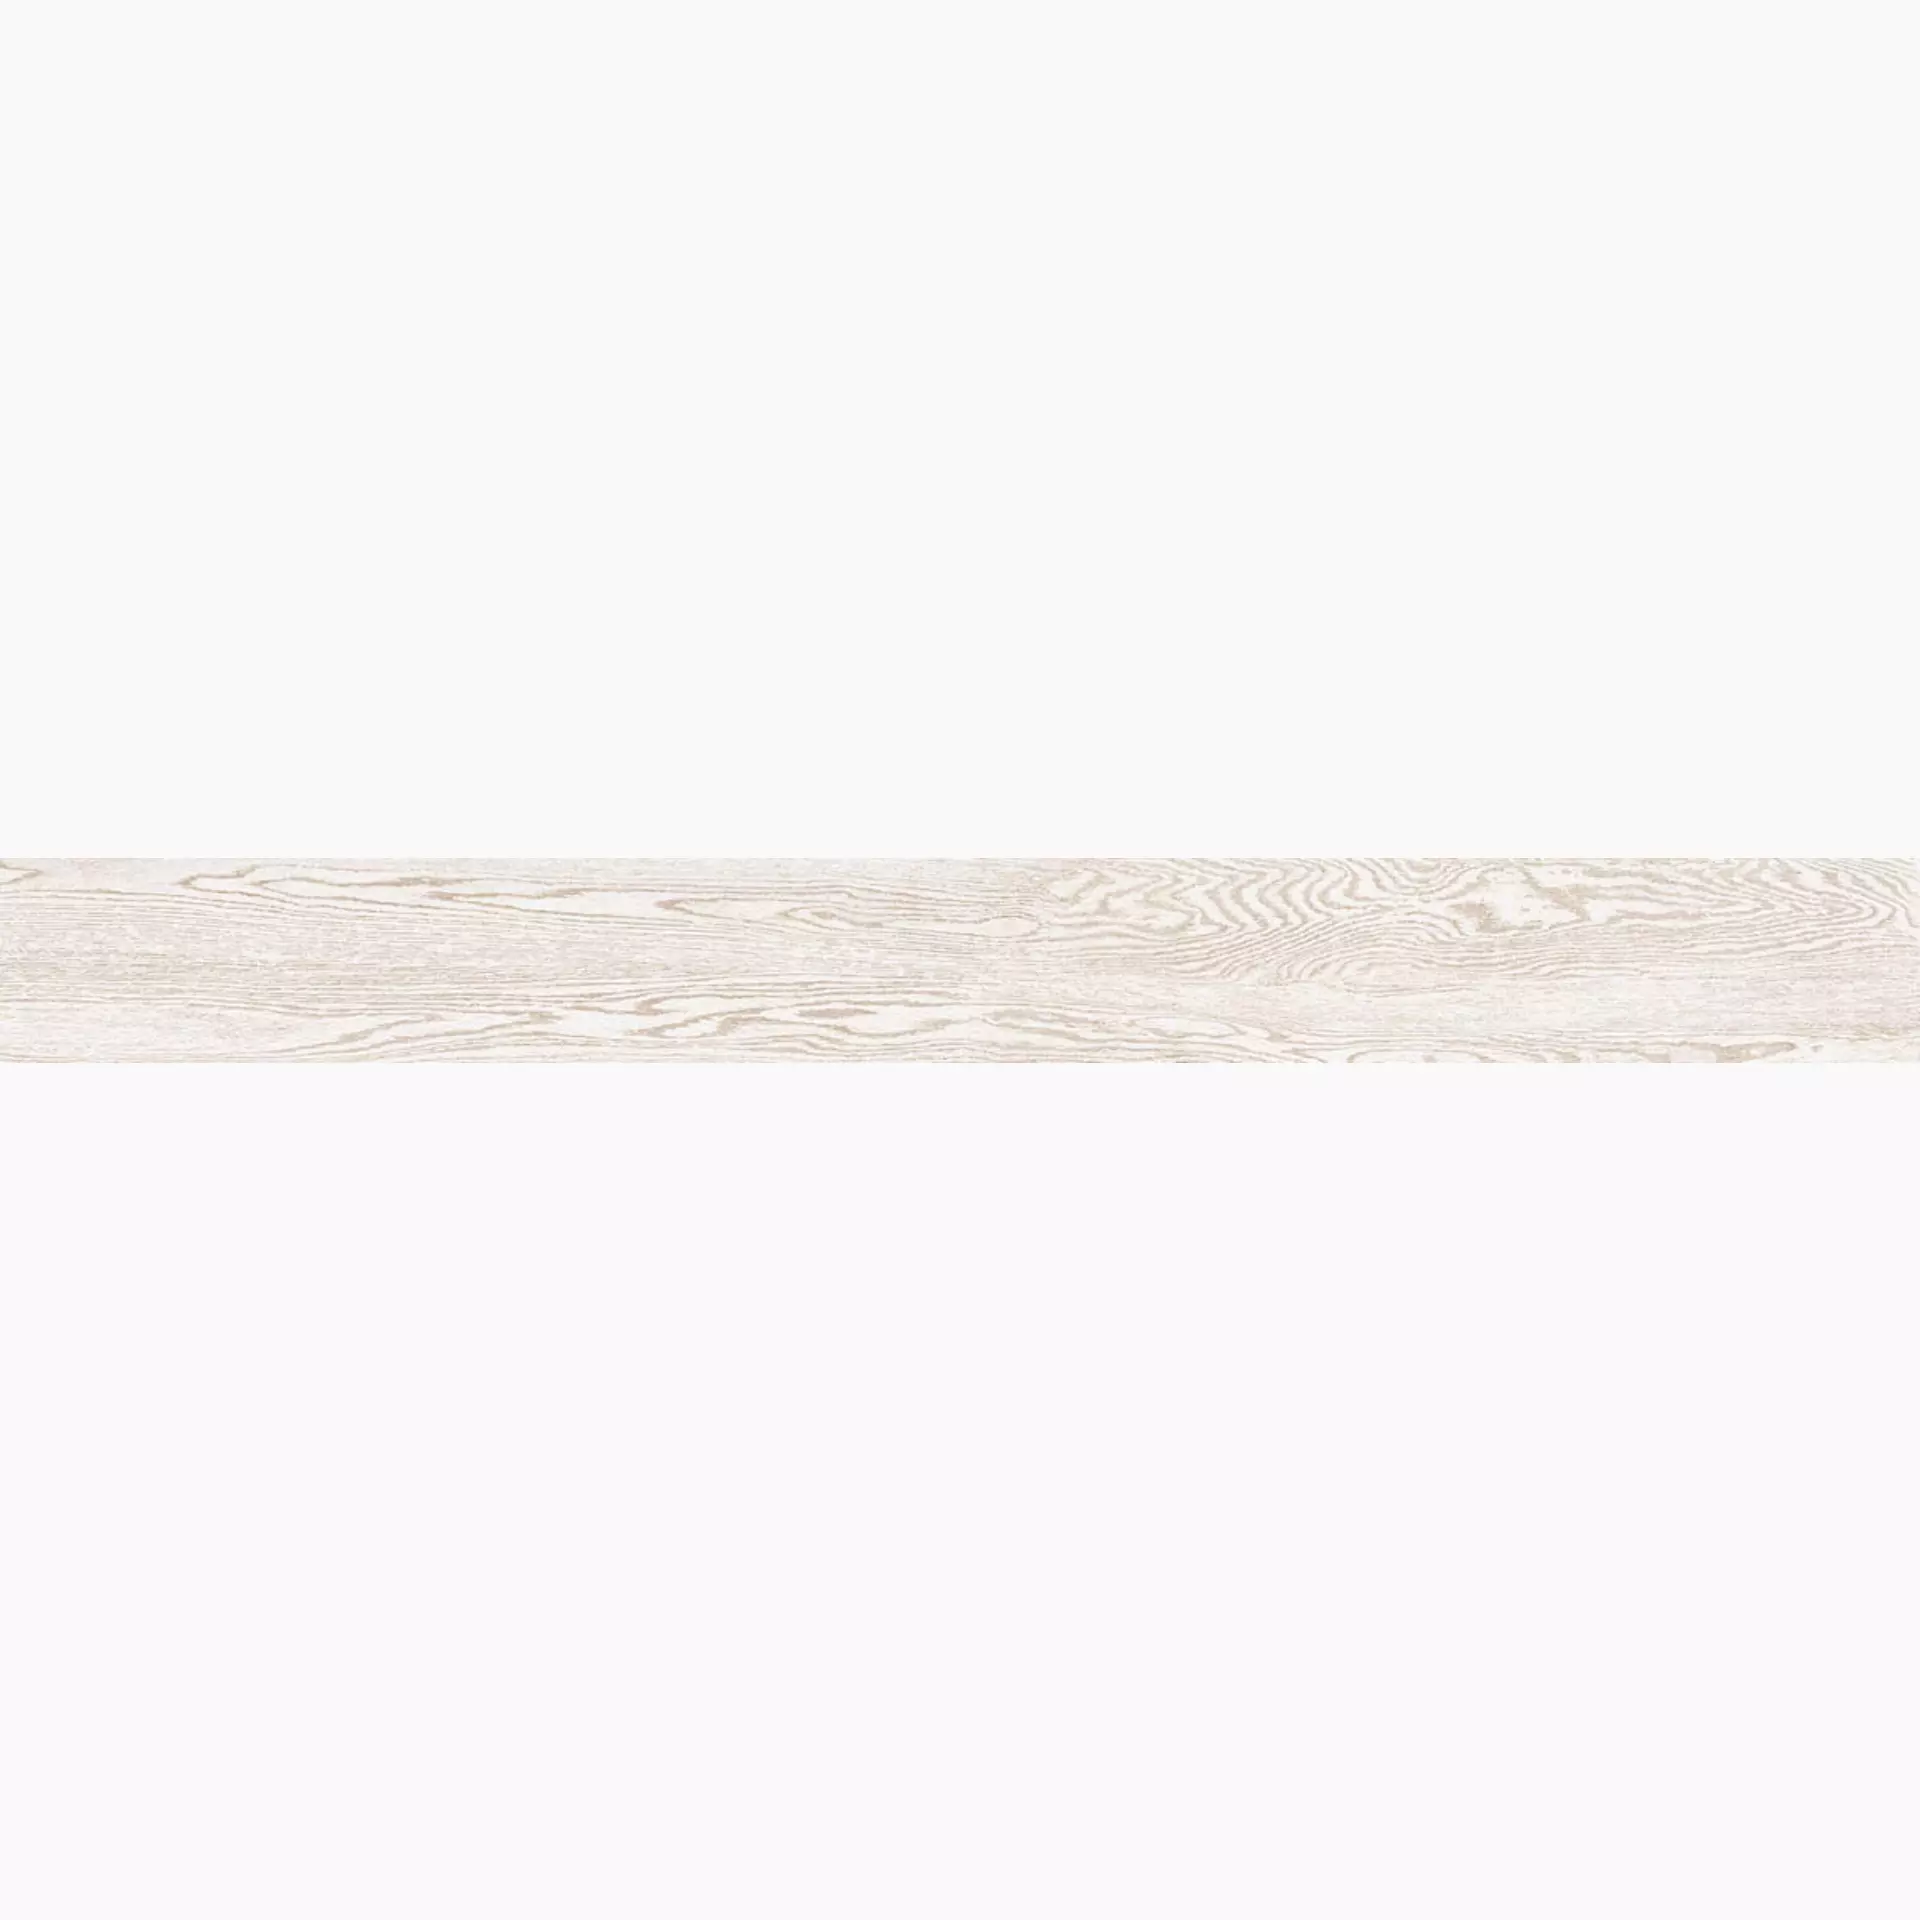 La Faenza Legno White Natural Slate Cut Matt 170465 20x180cm rectified 10mm - LEGNO 2018W RM